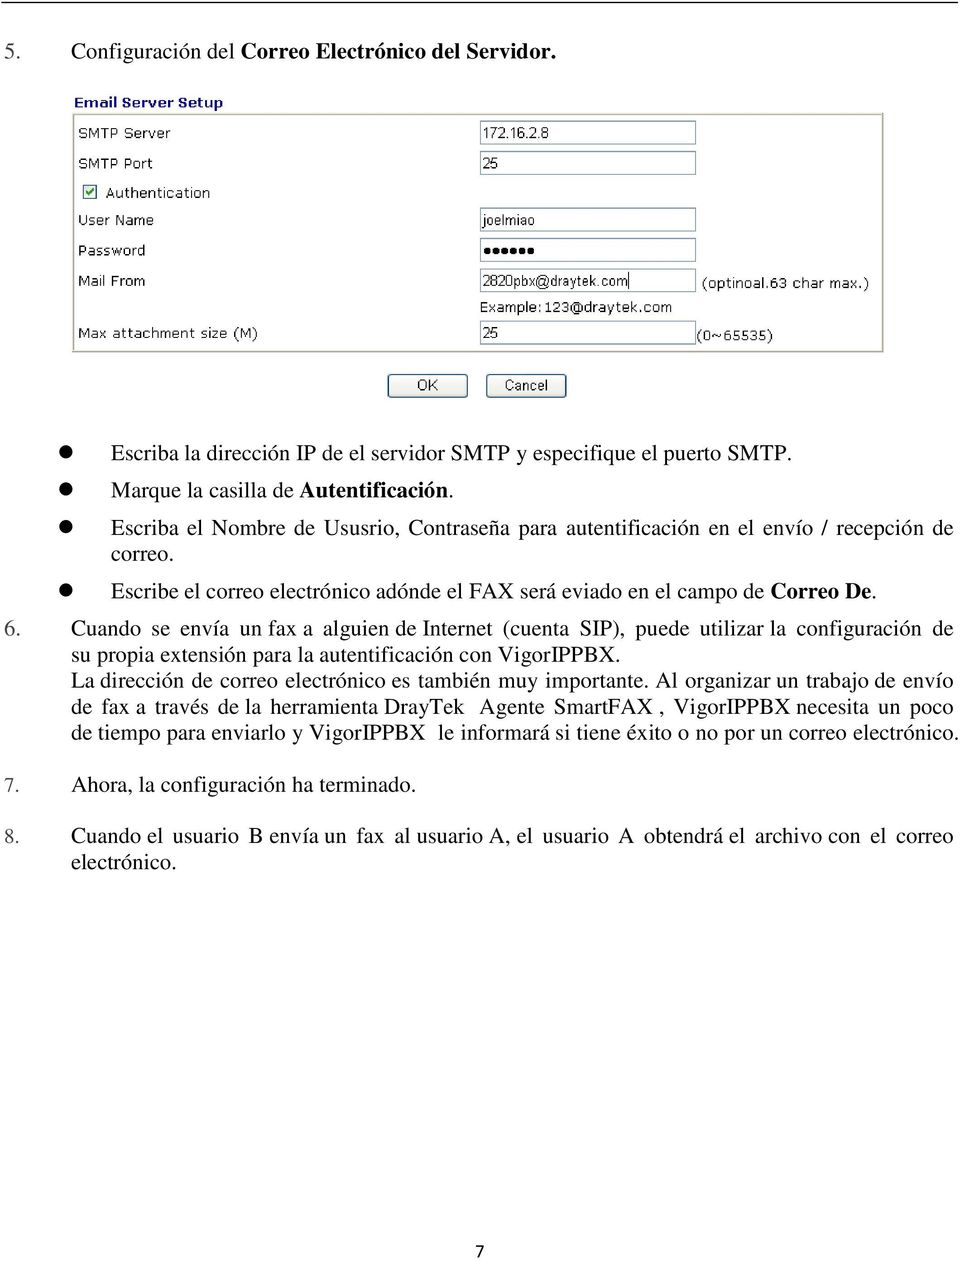 Cuando se envía un fax a alguien de Internet (cuenta SIP), puede utilizar la configuración de su propia extensión para la autentificación con VigorIPPBX.